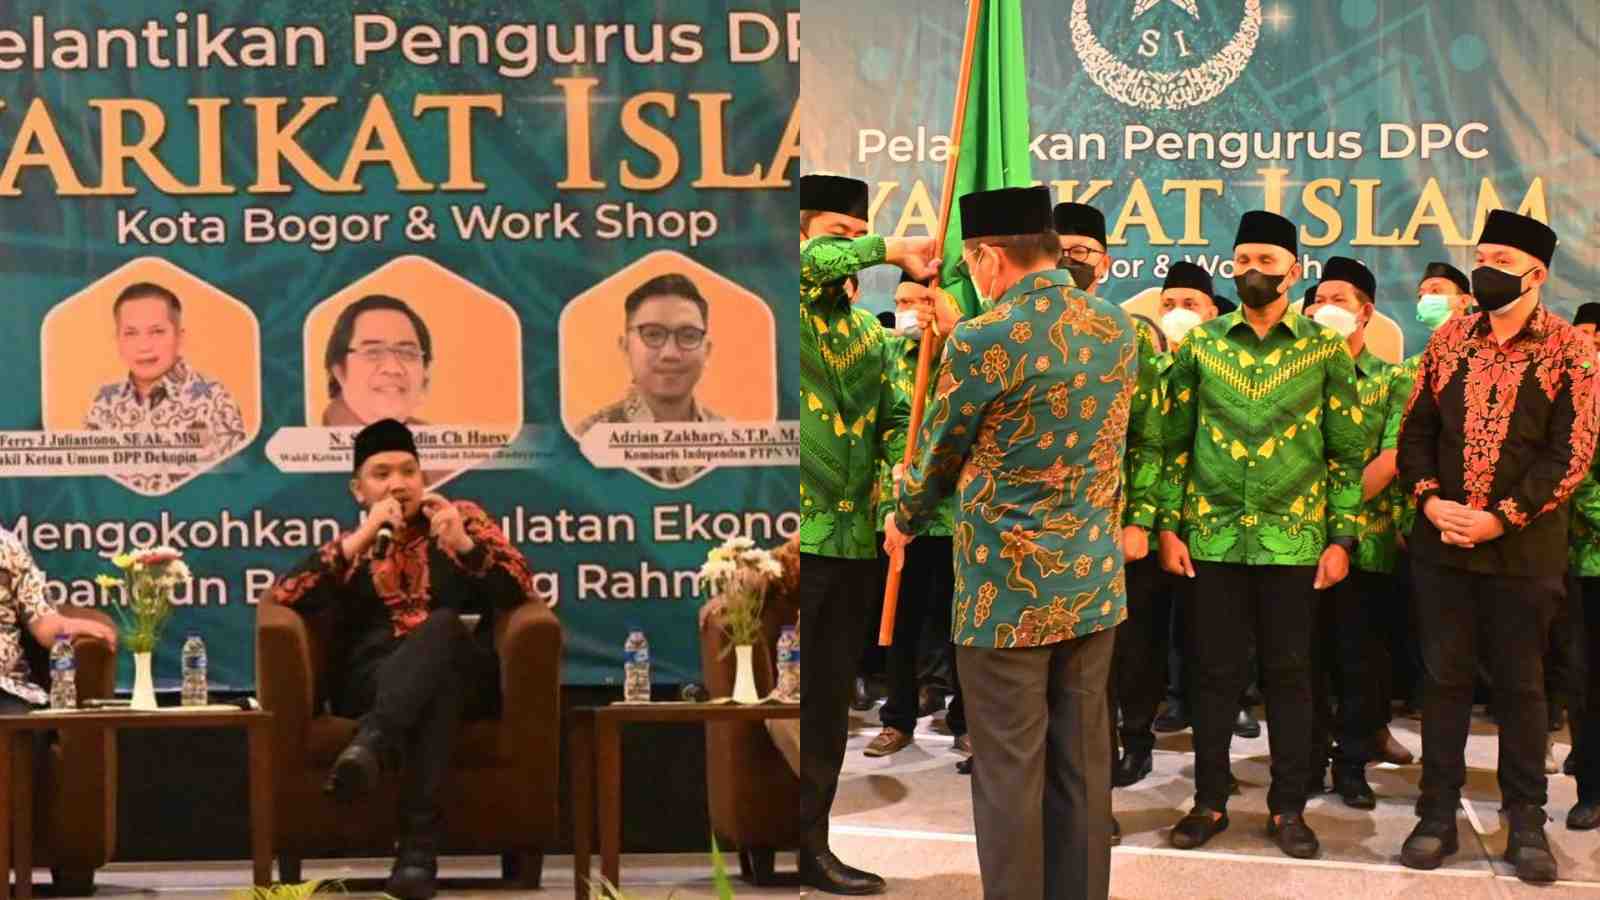 Komisaris Milenial PTPN VIII Adrian Zakhary Sebut Pelantikan DPC Syarikat Islam Kota Bogor Bisa Membangkitkan Semangat Kebangsaan